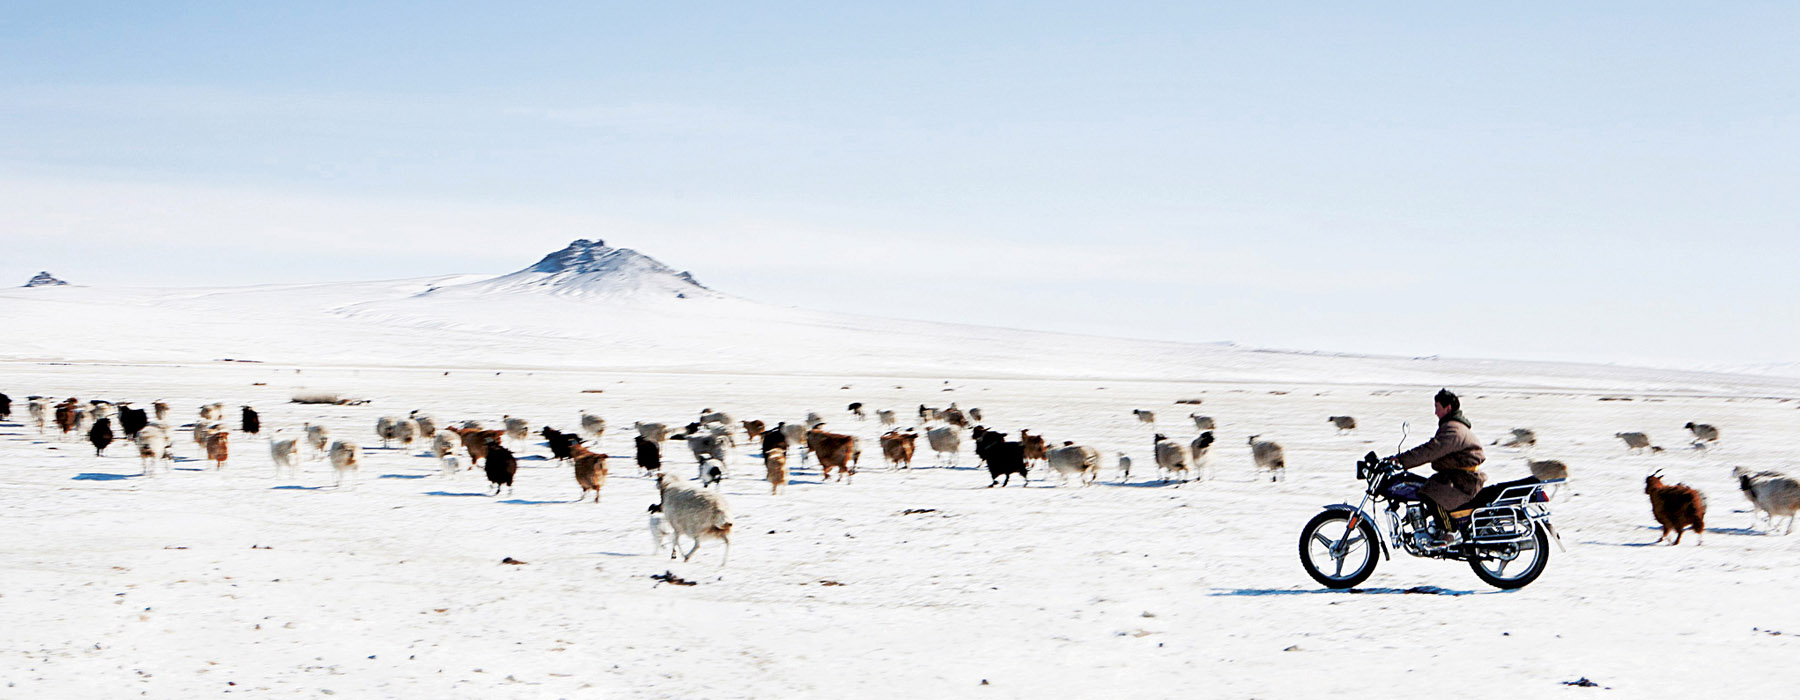 Je voyage éthique Mongolie